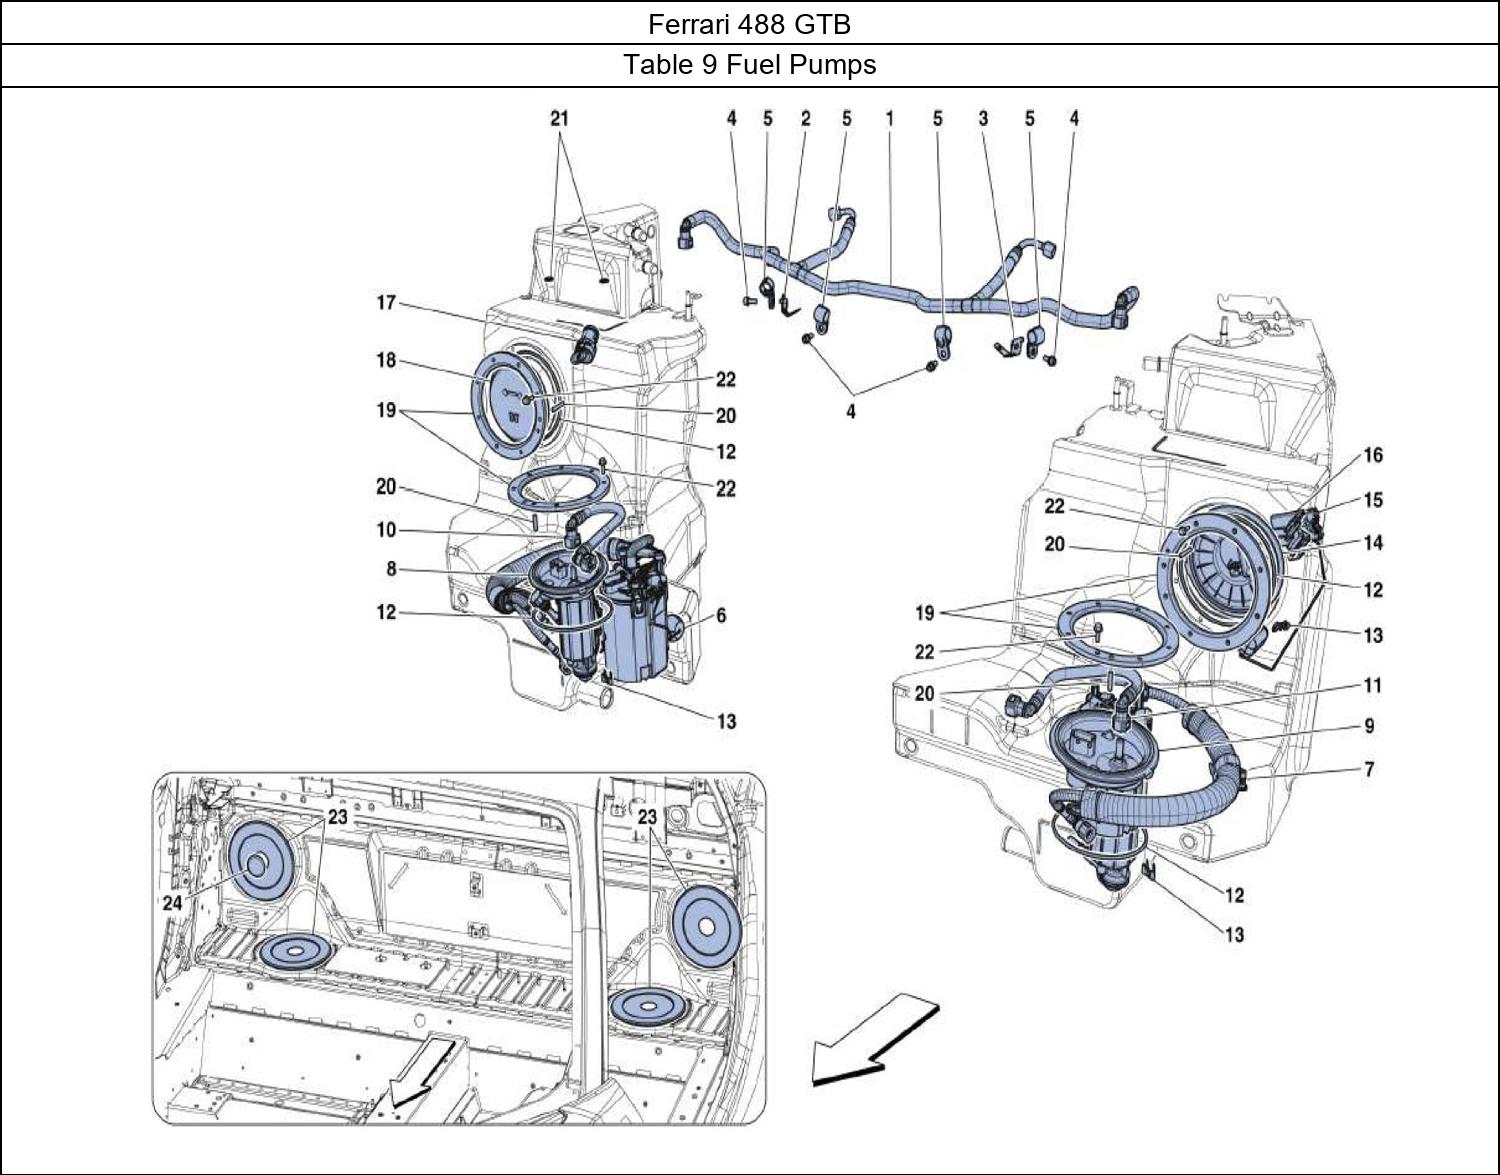 Ferrari Parts Ferrari 488 GTB Table 9 Fuel Pumps